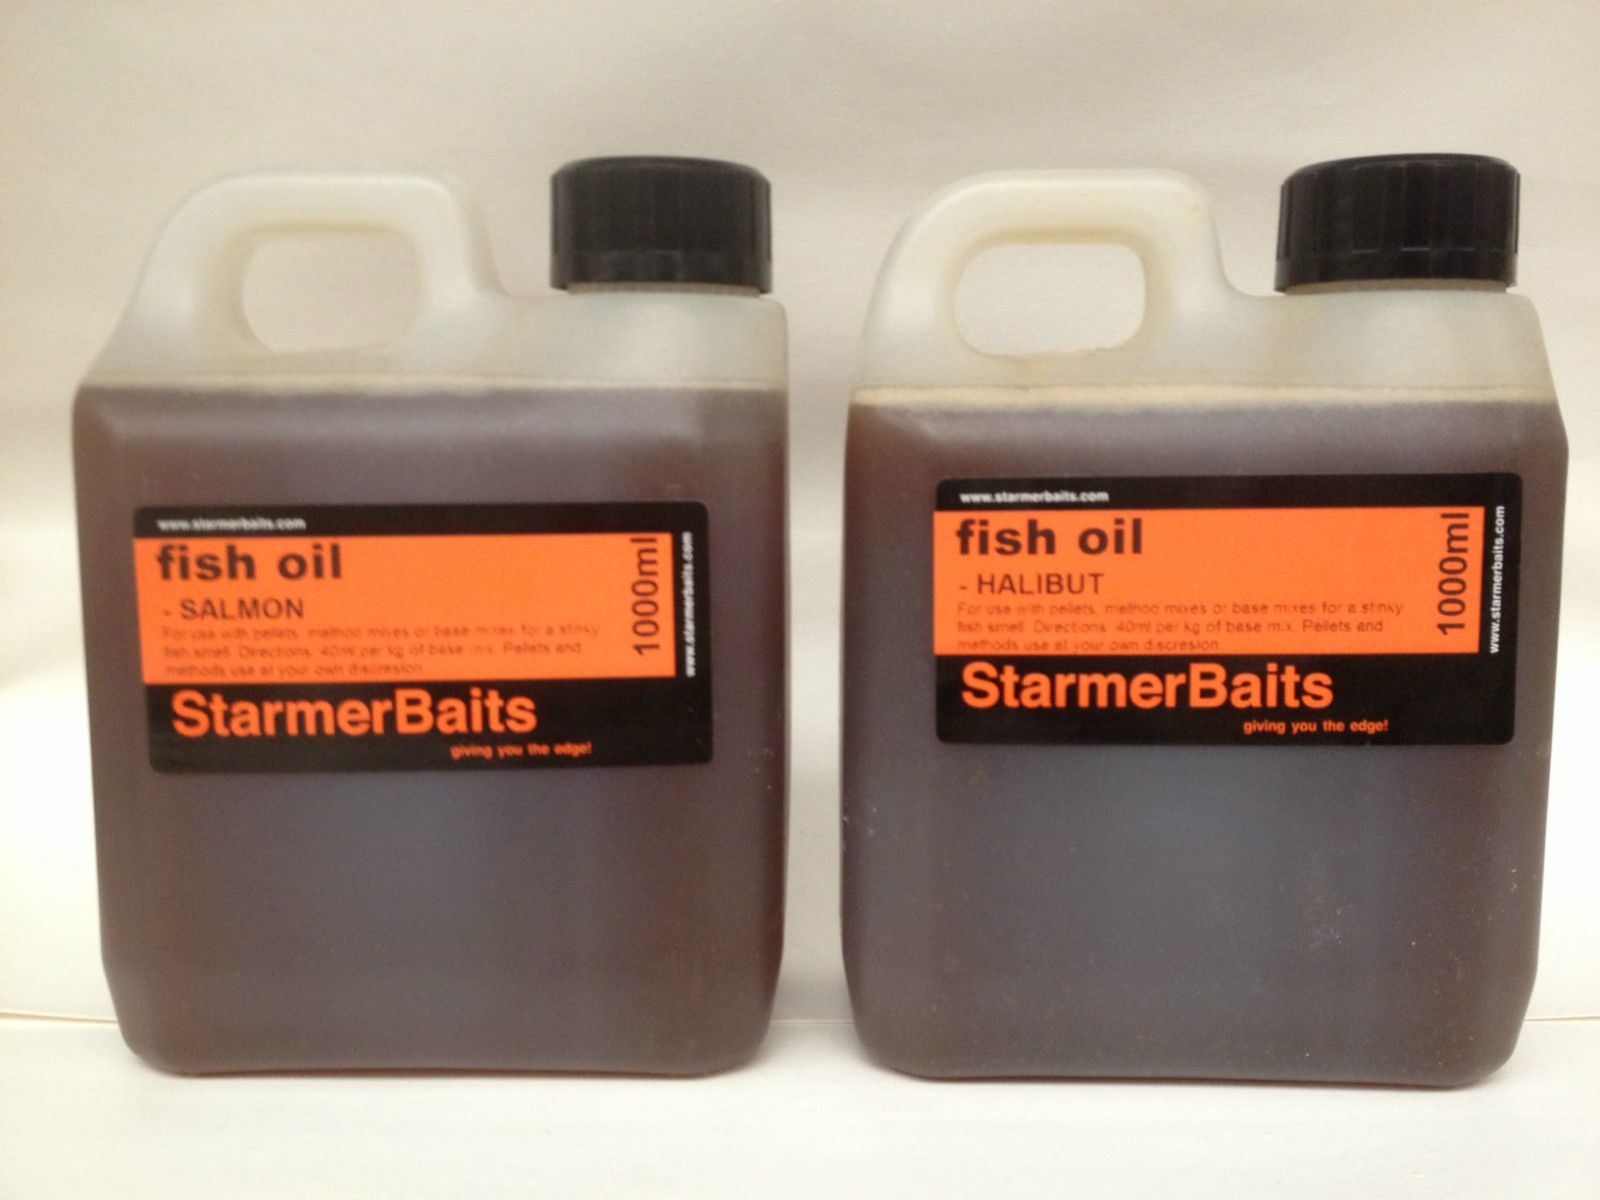 Natural fish oils